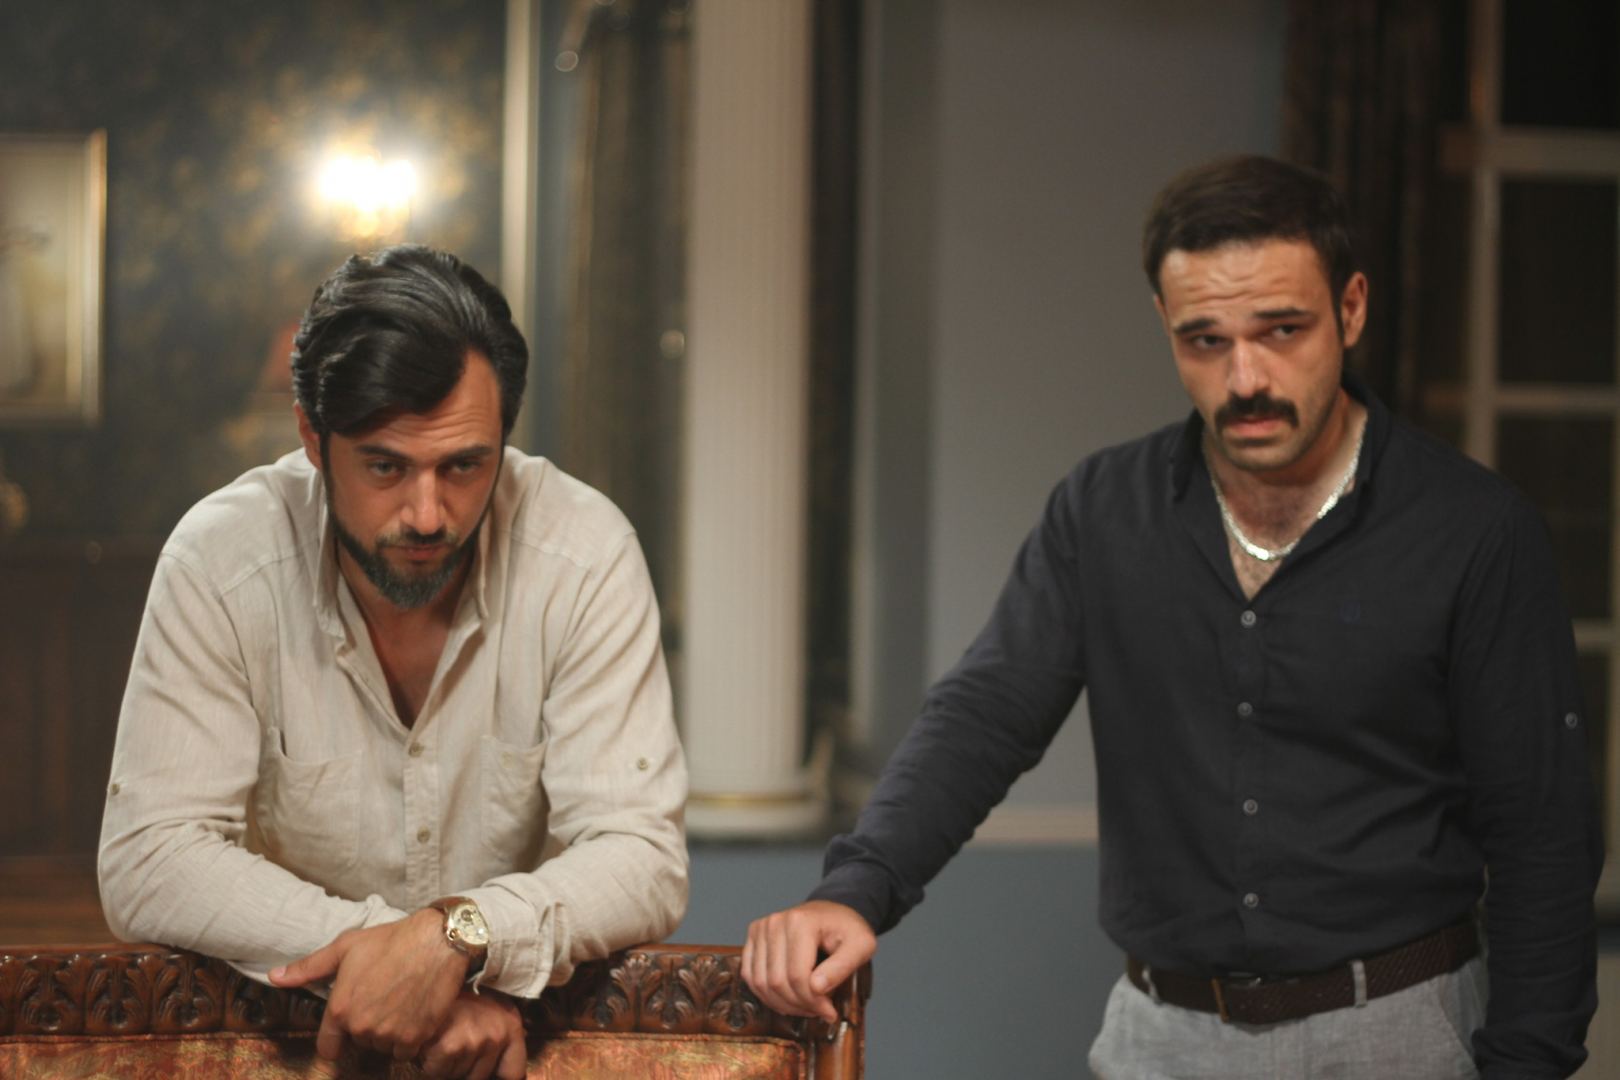 Хосров и Ширин в кино – азербайджанская драма сквозь призму современных событий (ФОТО)